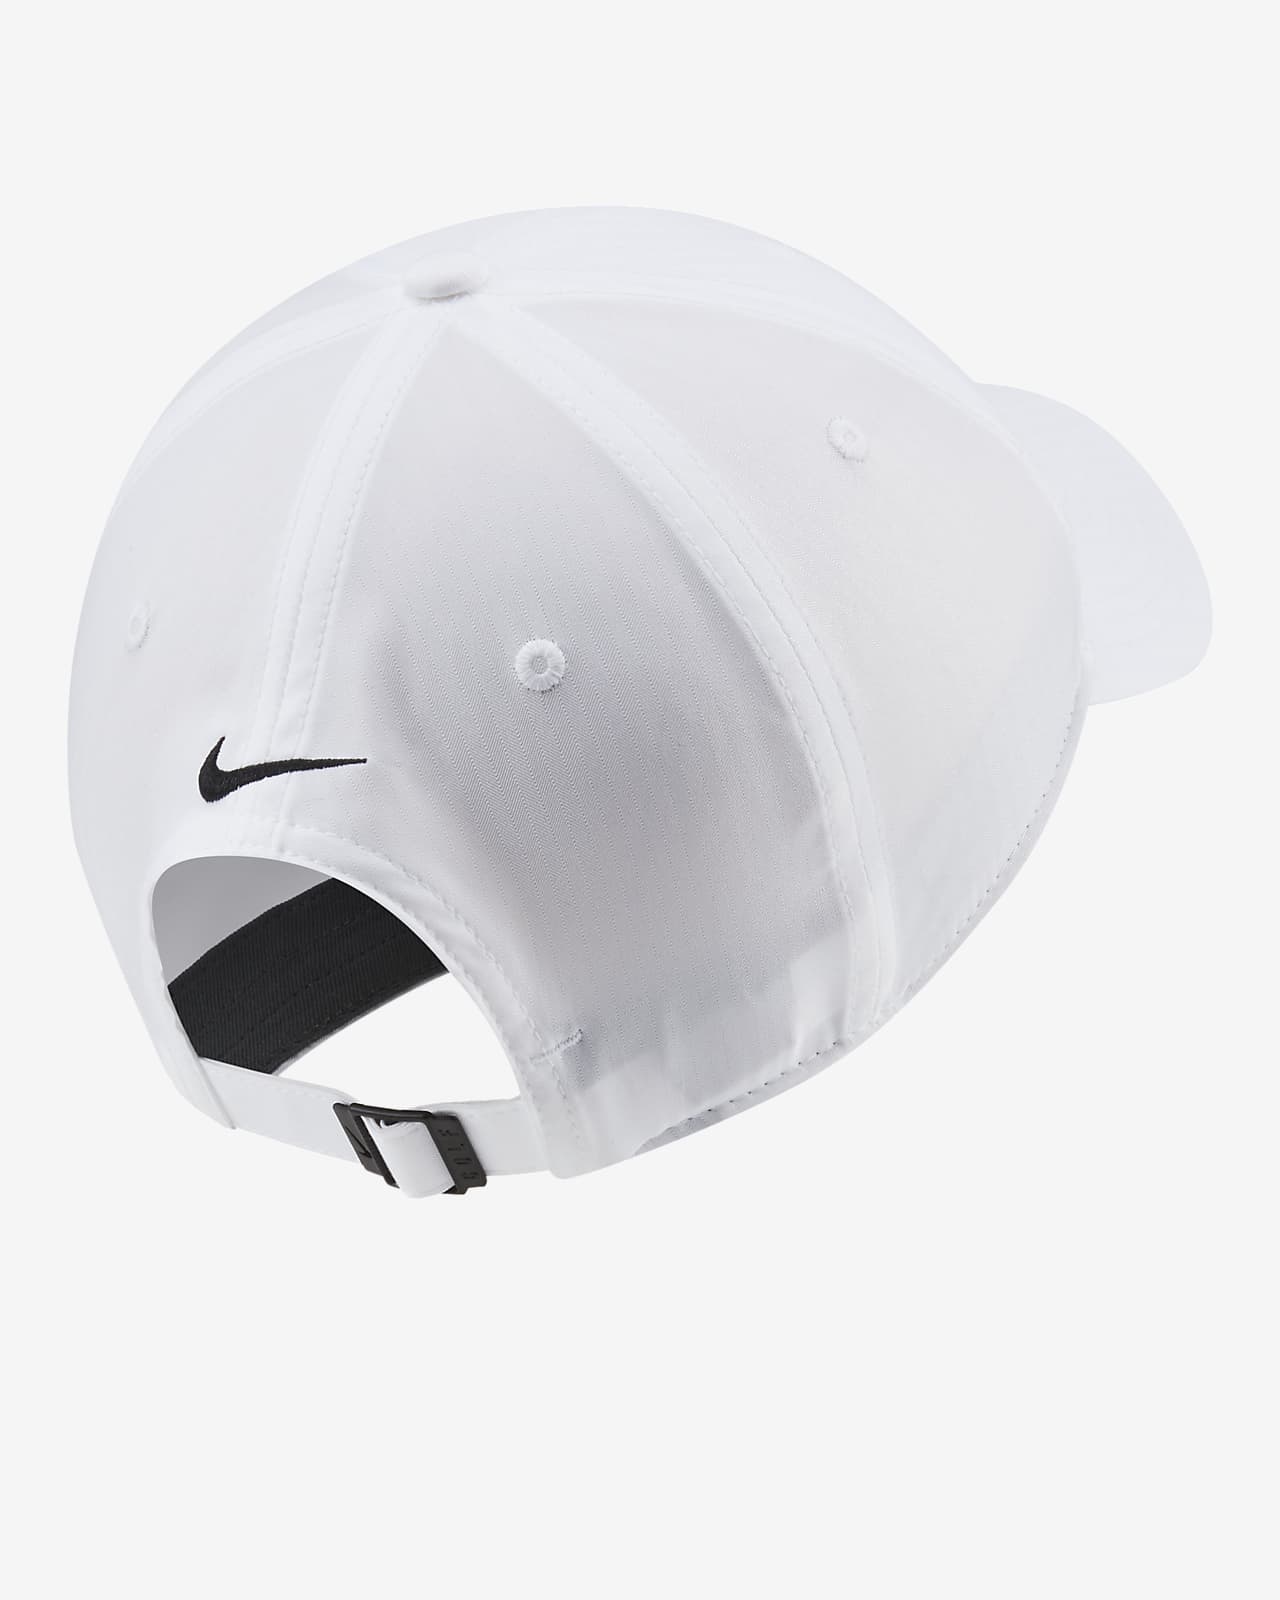 Nike Legacy91 Golf Hat. Nike JP